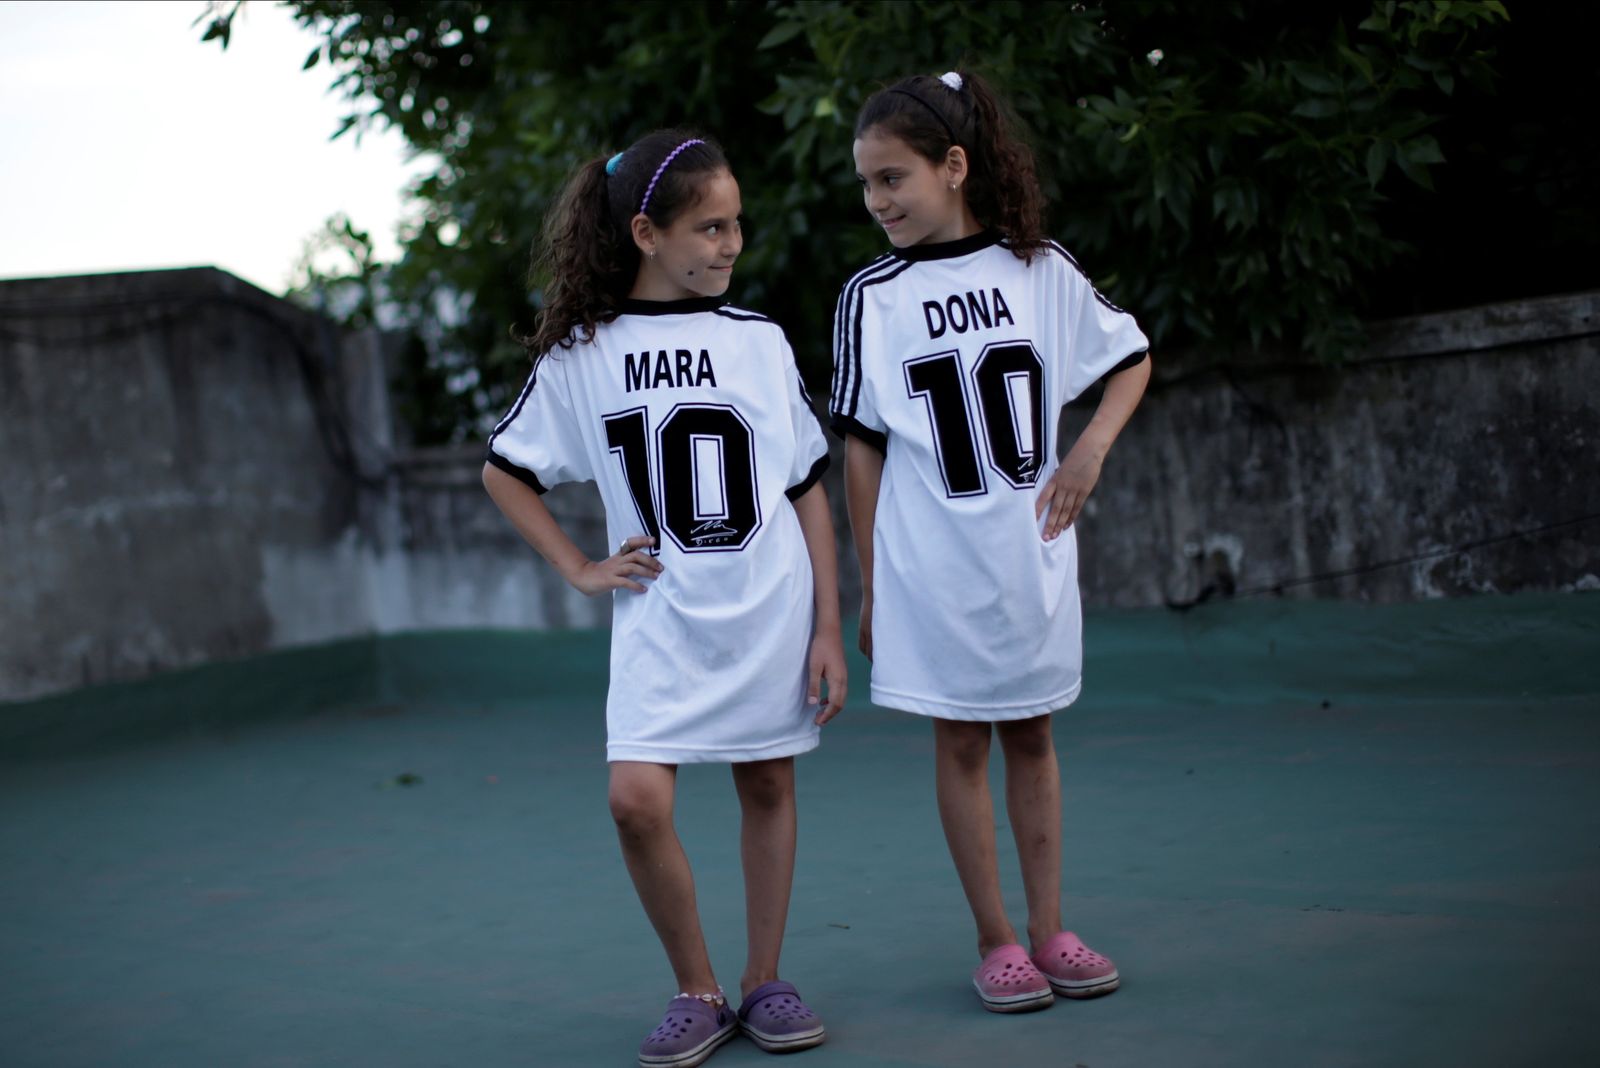 التوأمتان مارا ودونا يرتديان القميص رقم 10، المفضل لدى اللاعب الراحل مارادونا - REUTERS